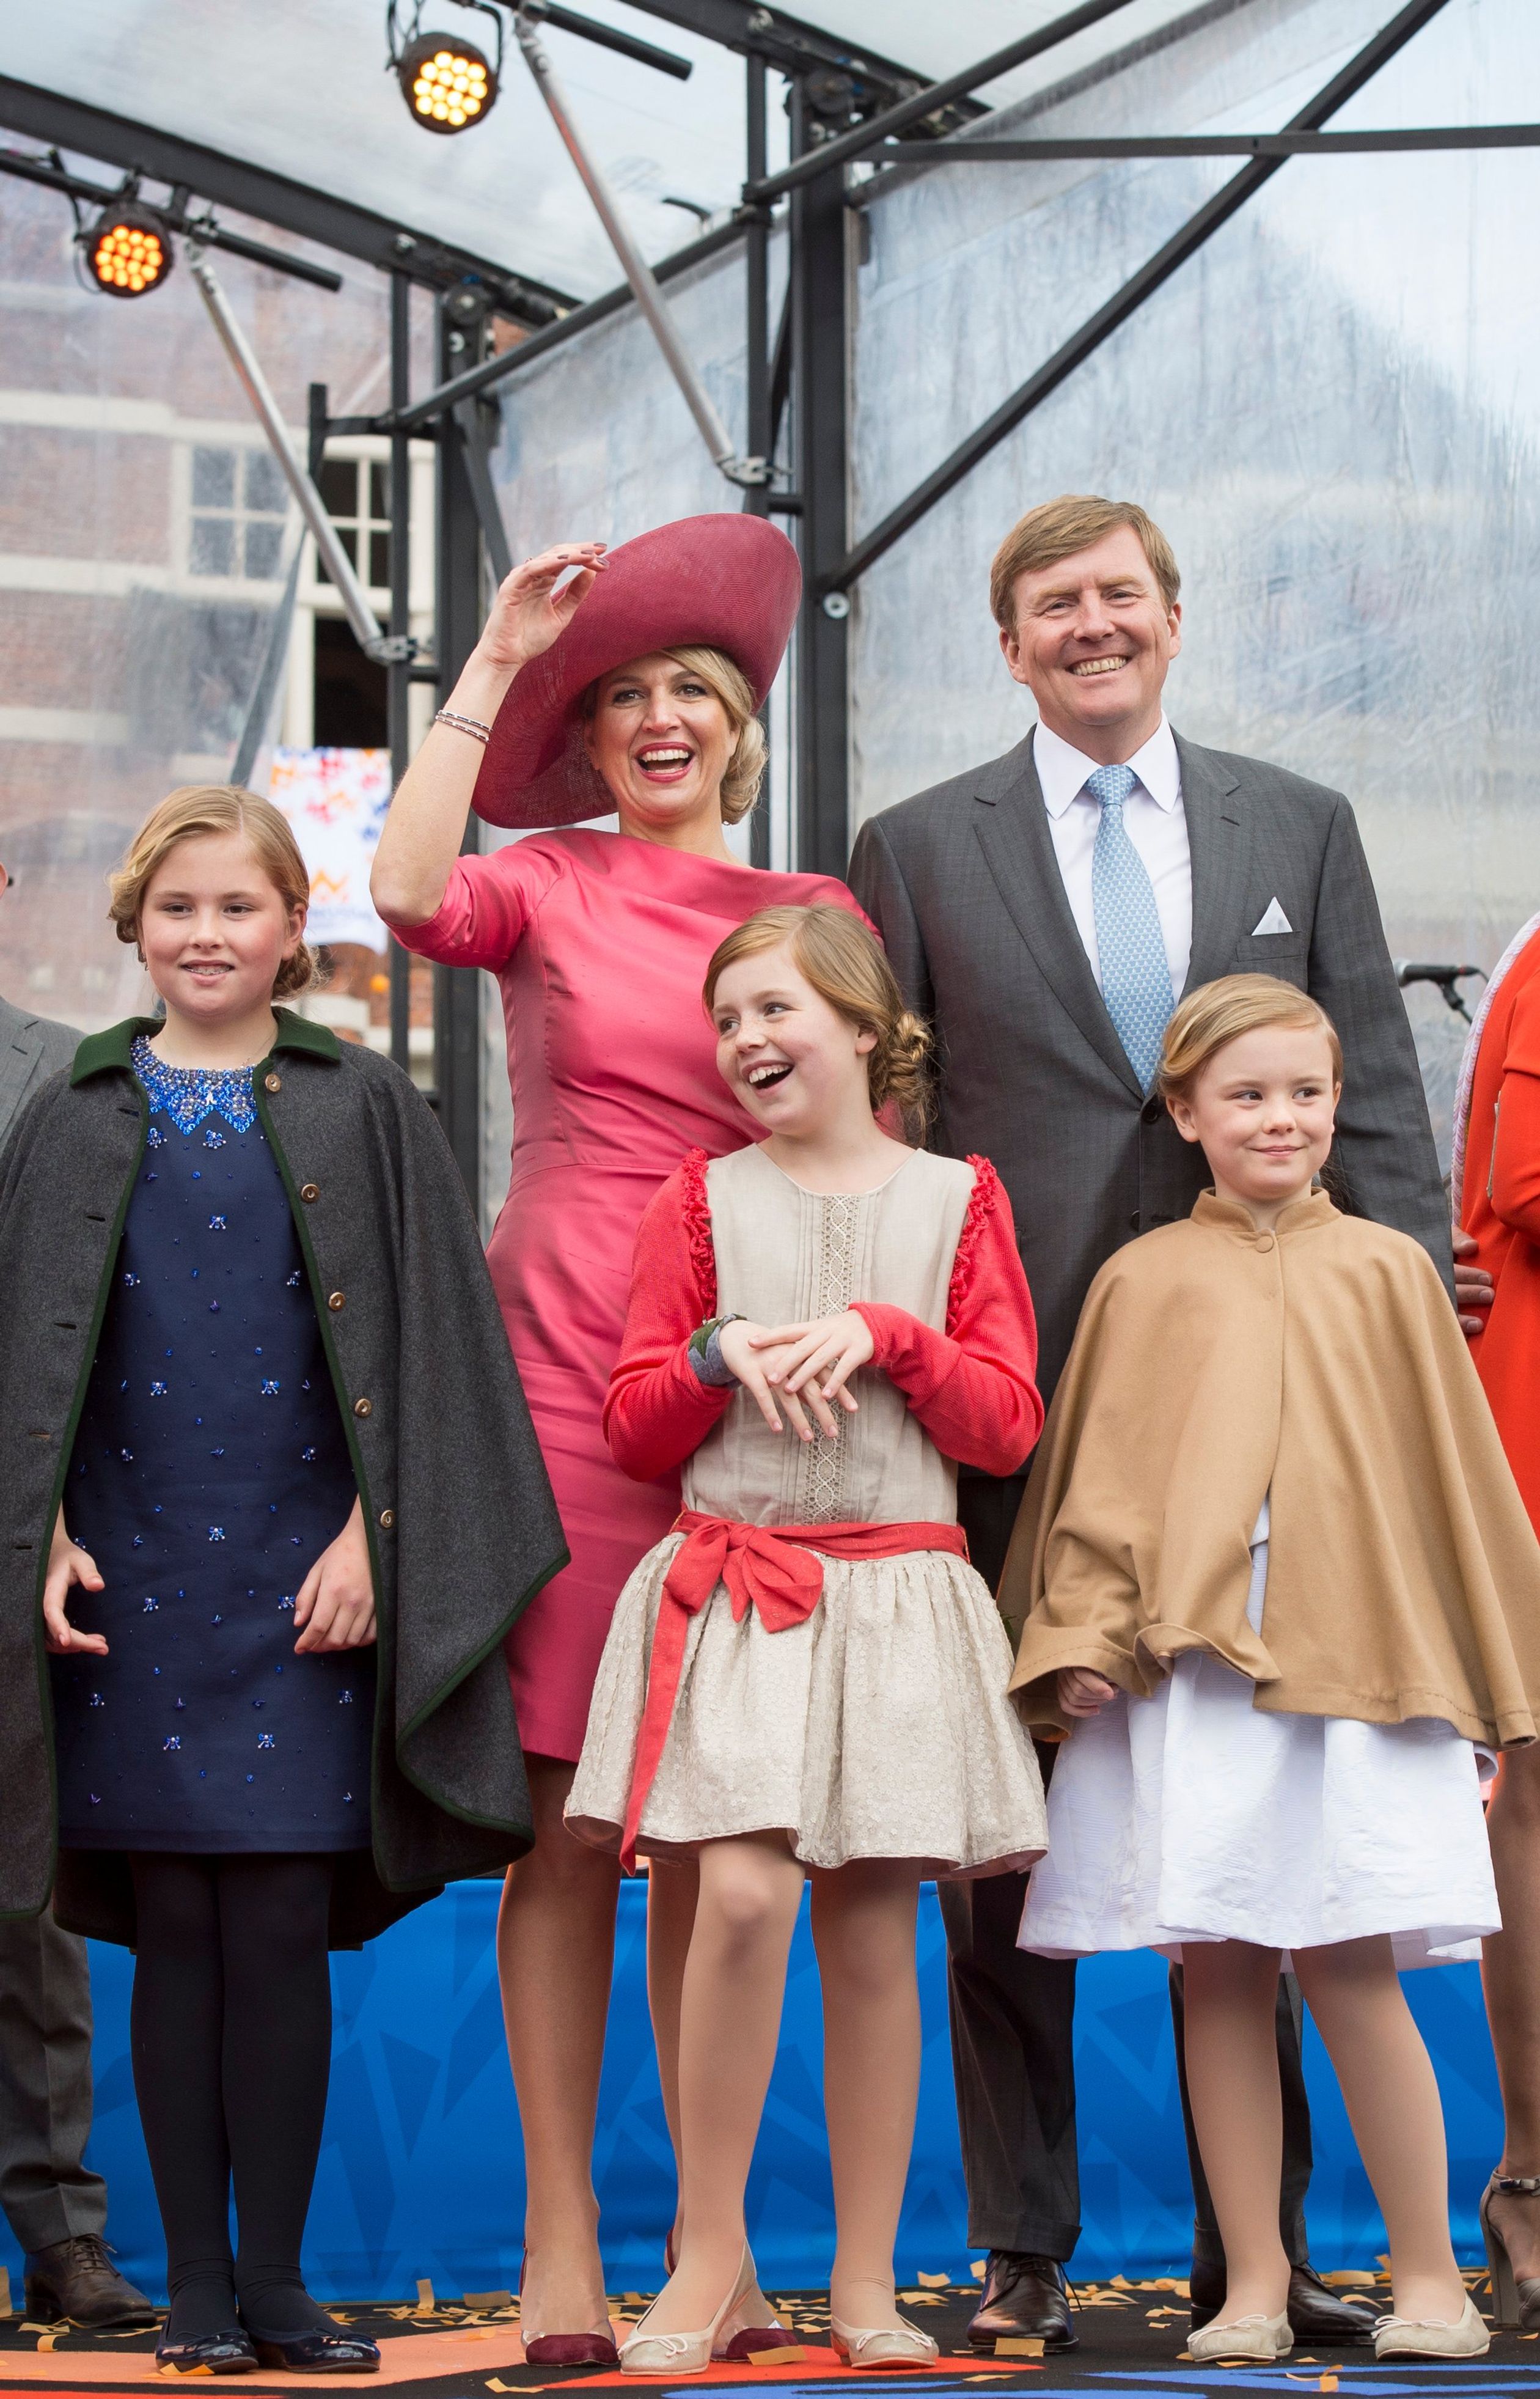 De prinsesjes tijdens Koningsdag (2015) in Dordrecht.